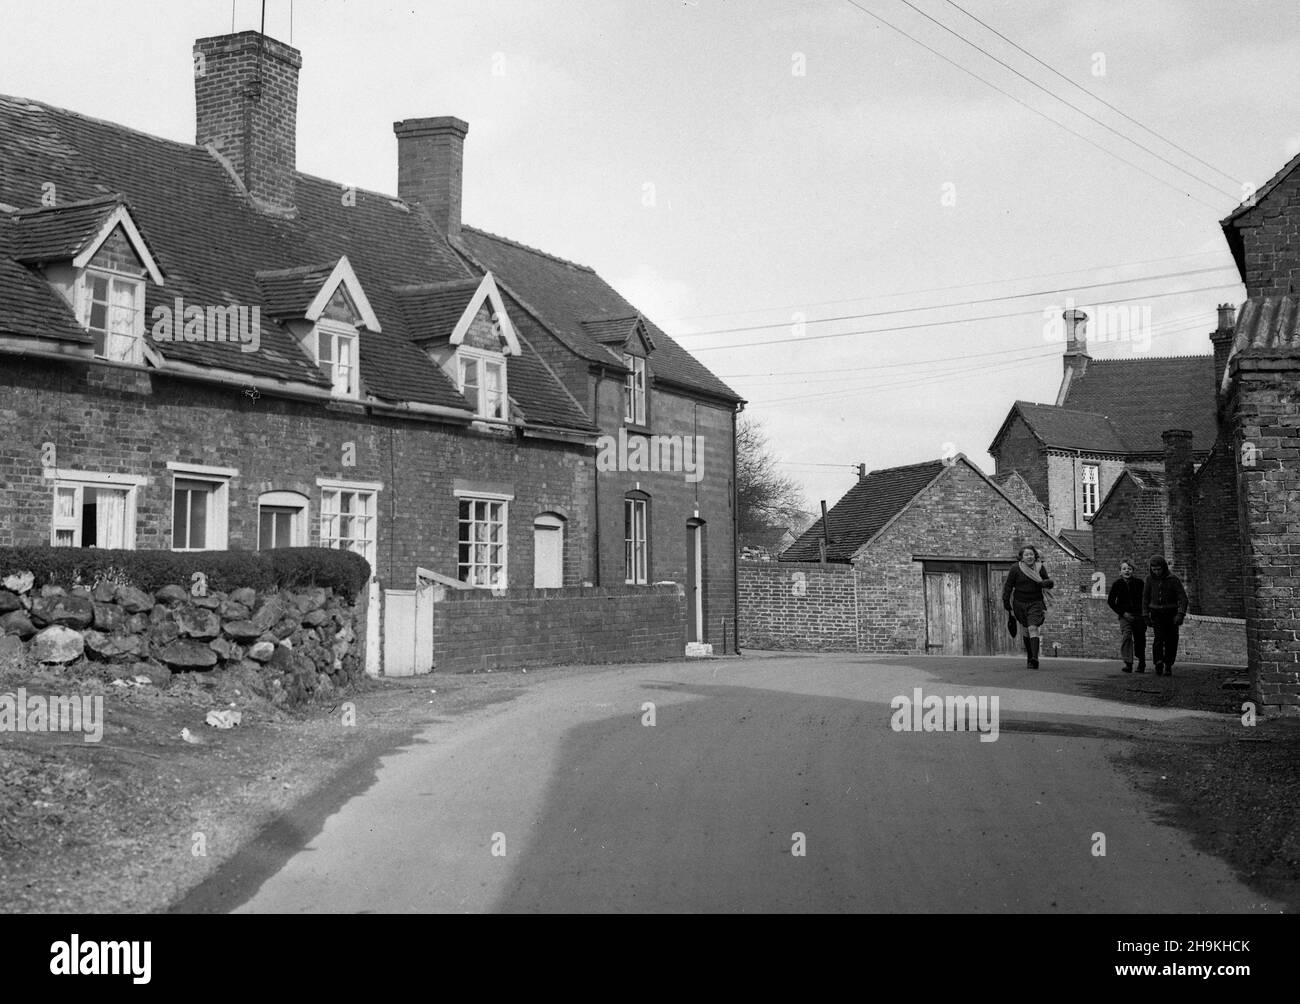 Madeley Shropshire en 1967. Gran Bretaña 1960s Foto de stock